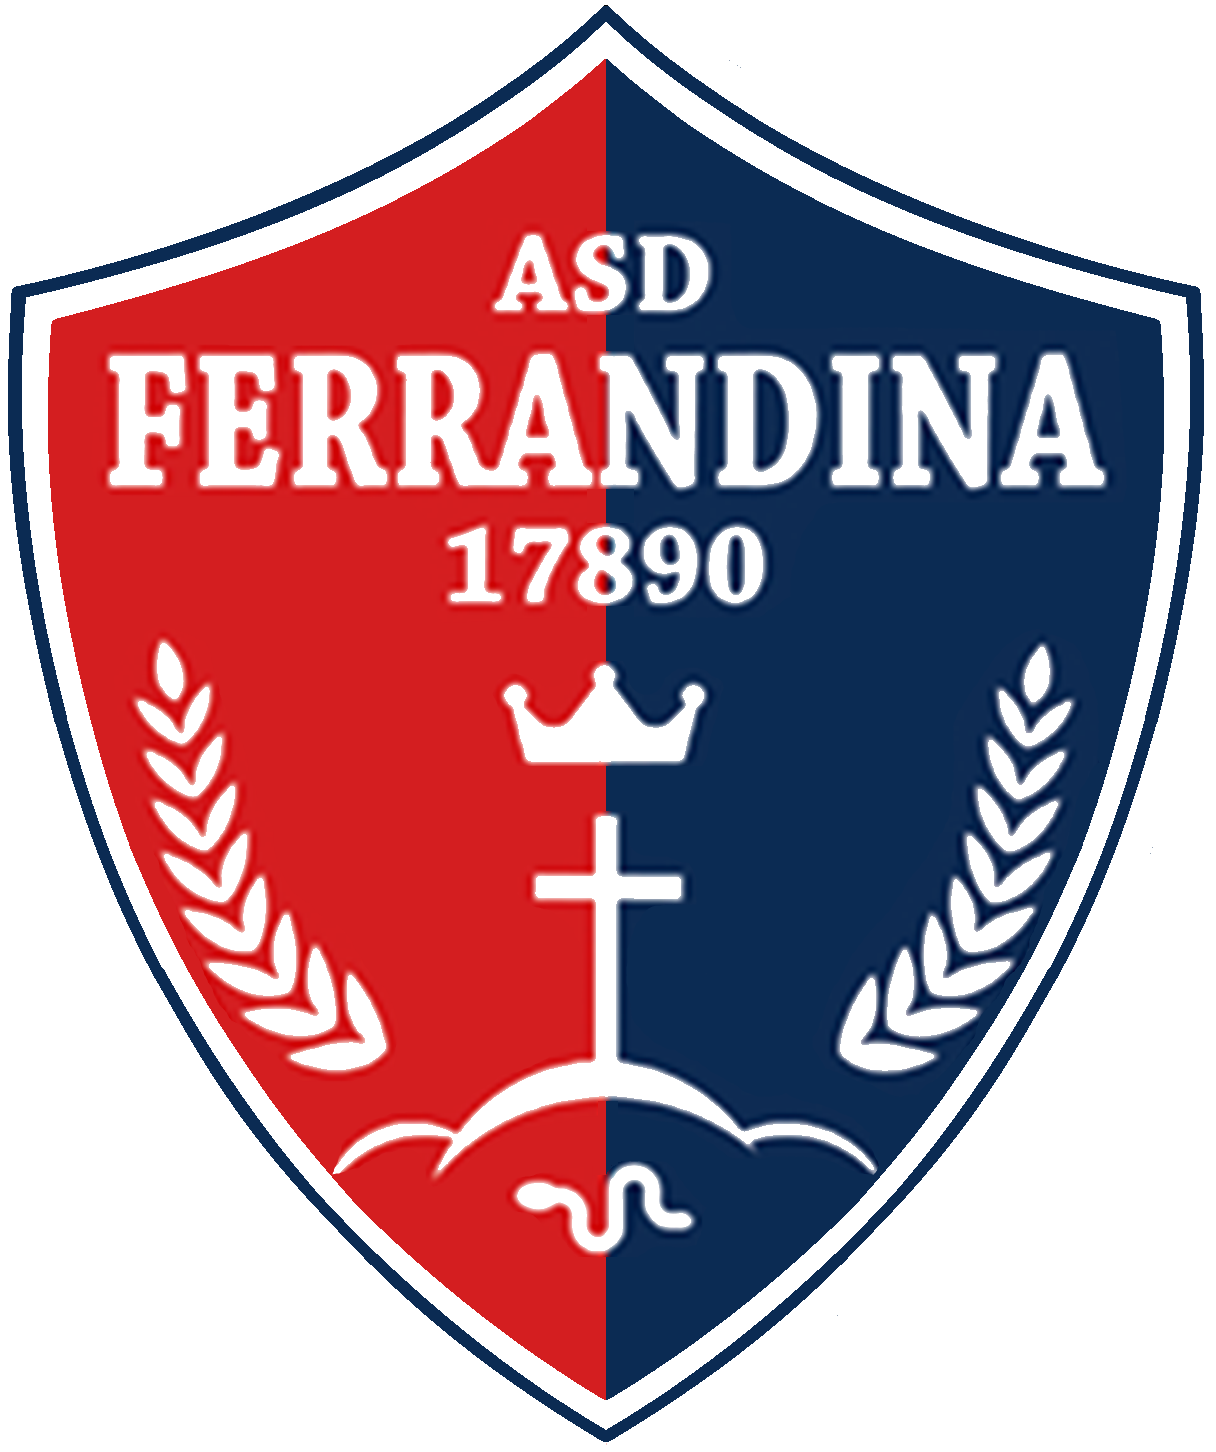 Wappen ASD Ferrandina 17890